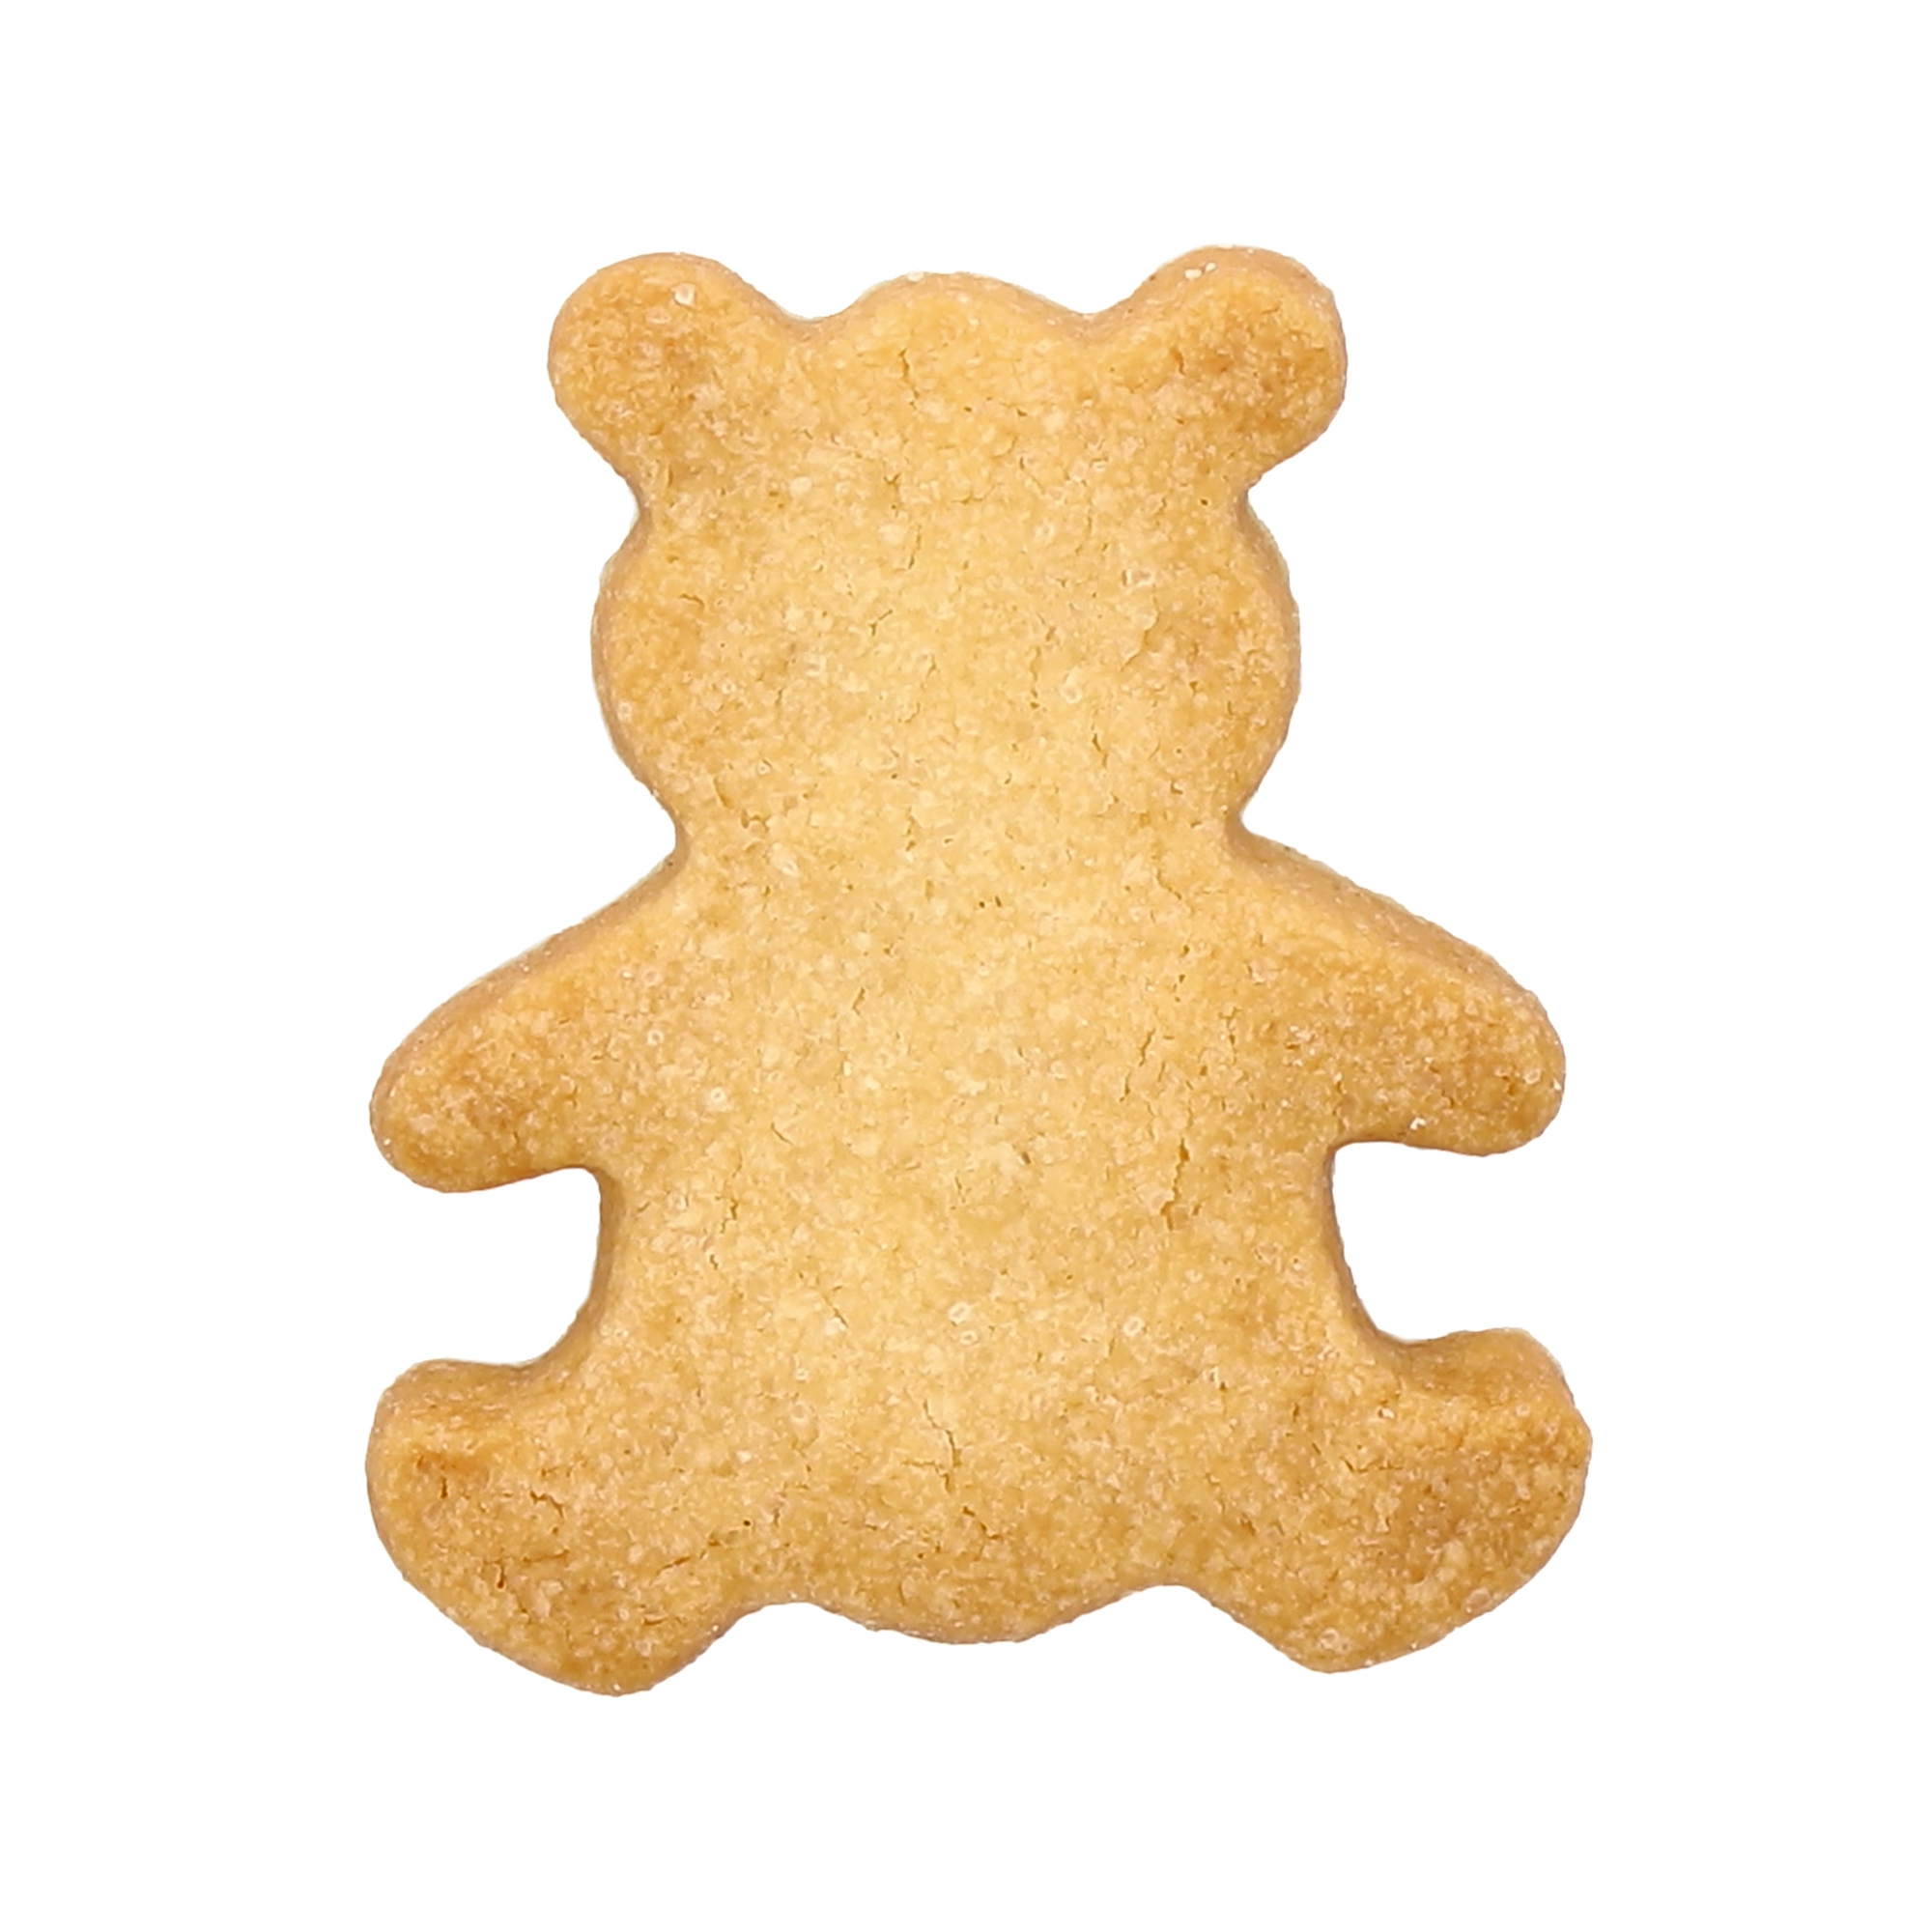 Birkmann - cookie cutter - Teddy bear small 5 cm